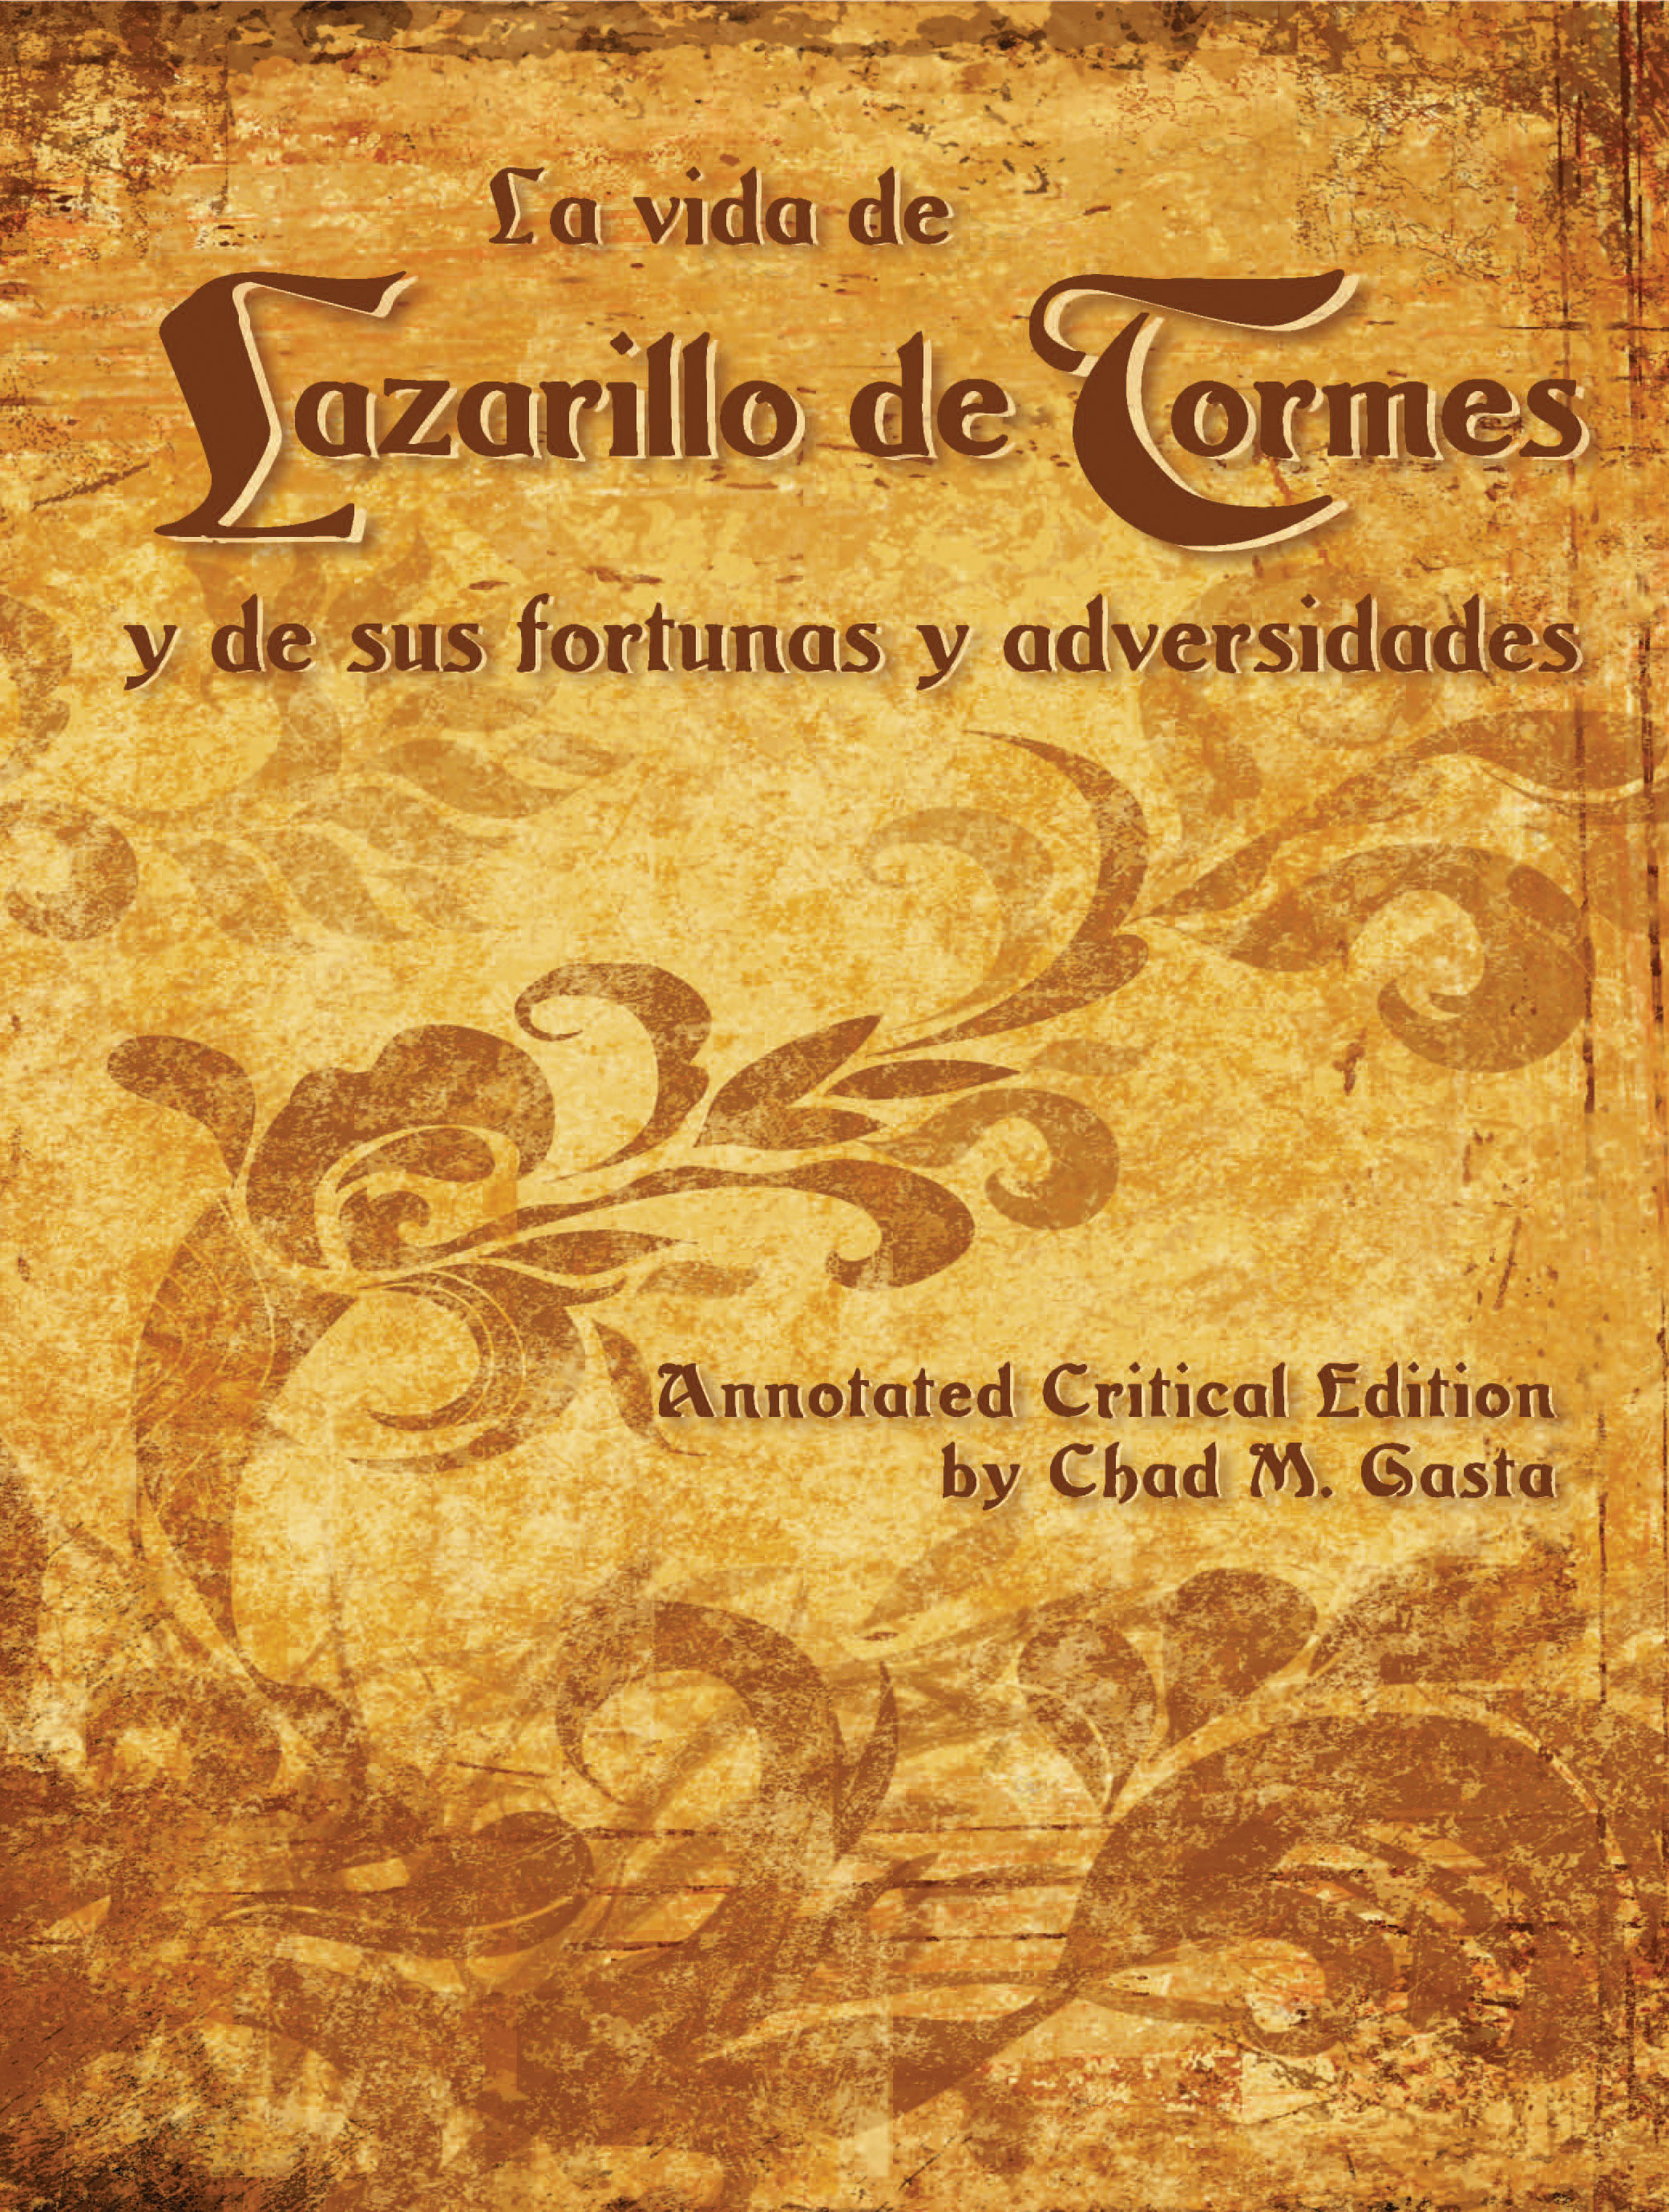 La vida de Lazarillo de Tormes y de sus fortunas y adversidades: Annotated Critical Edition by edited by Chad M. Gasta